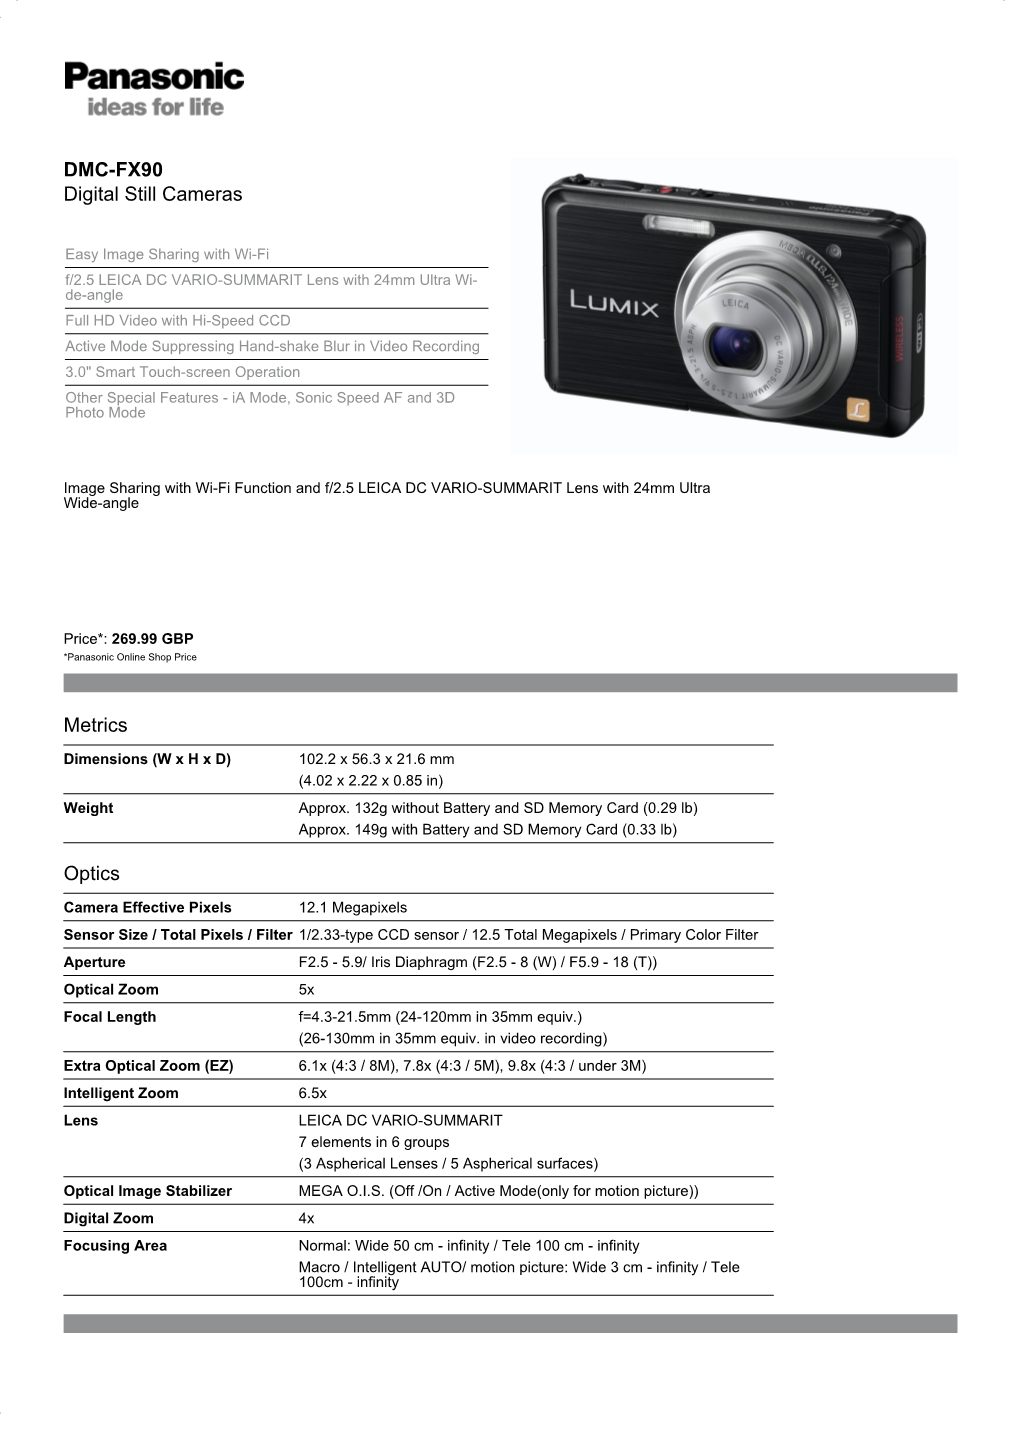 DMC-FX90 Digital Still Cameras Metrics Optics